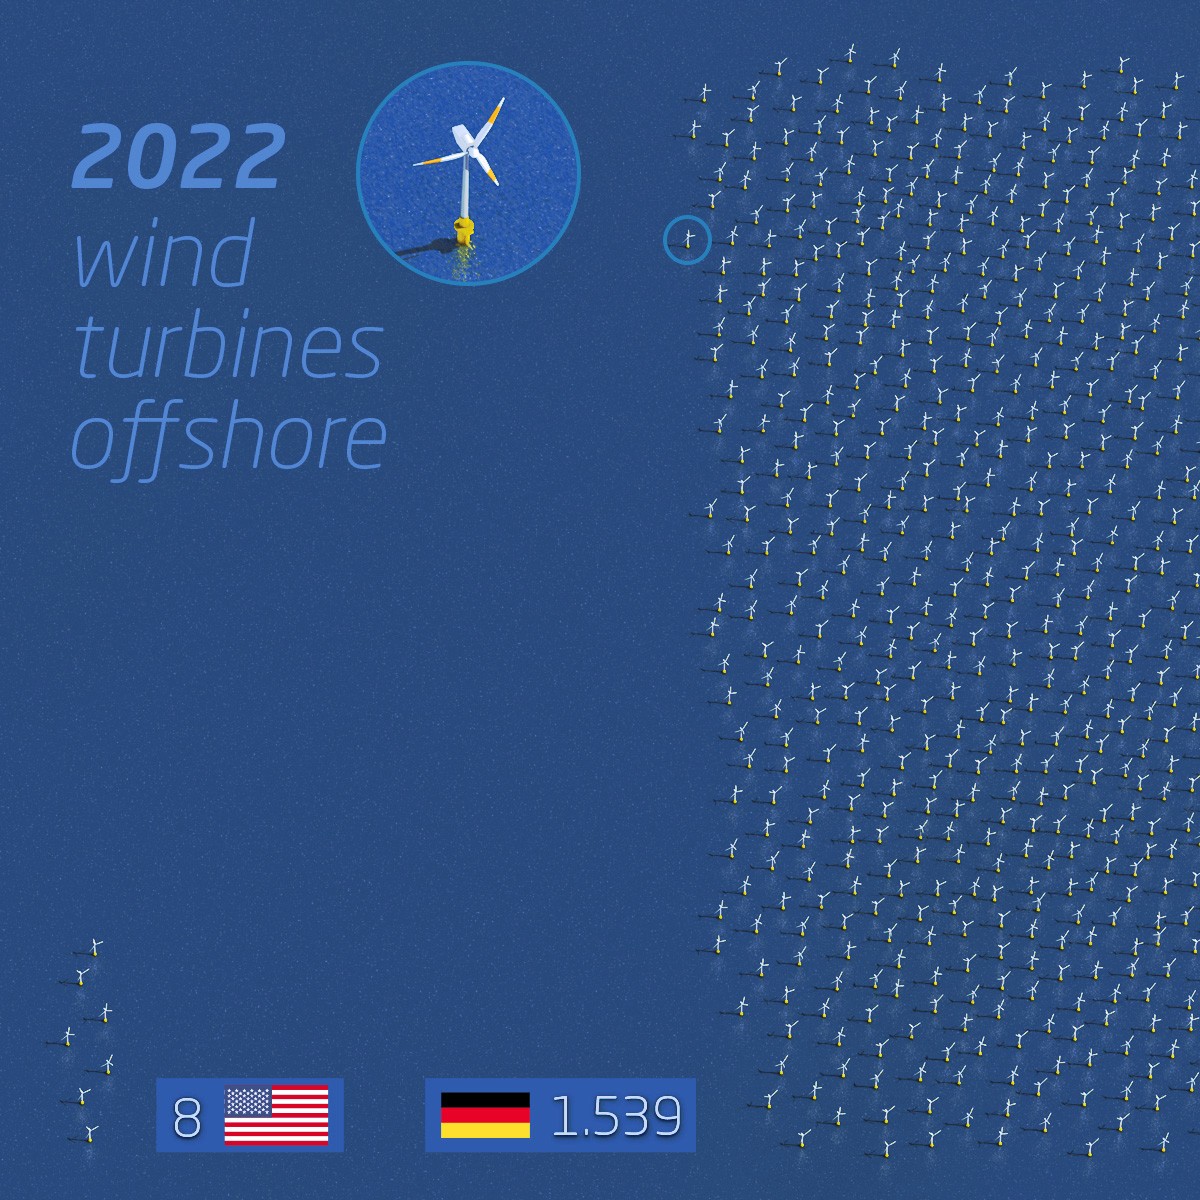 Vergleich Anzahl der Offshore Windräder in Deutschland und den USA, Little Picture - Social Media Infografik, Stefan Fichtel, ixtract